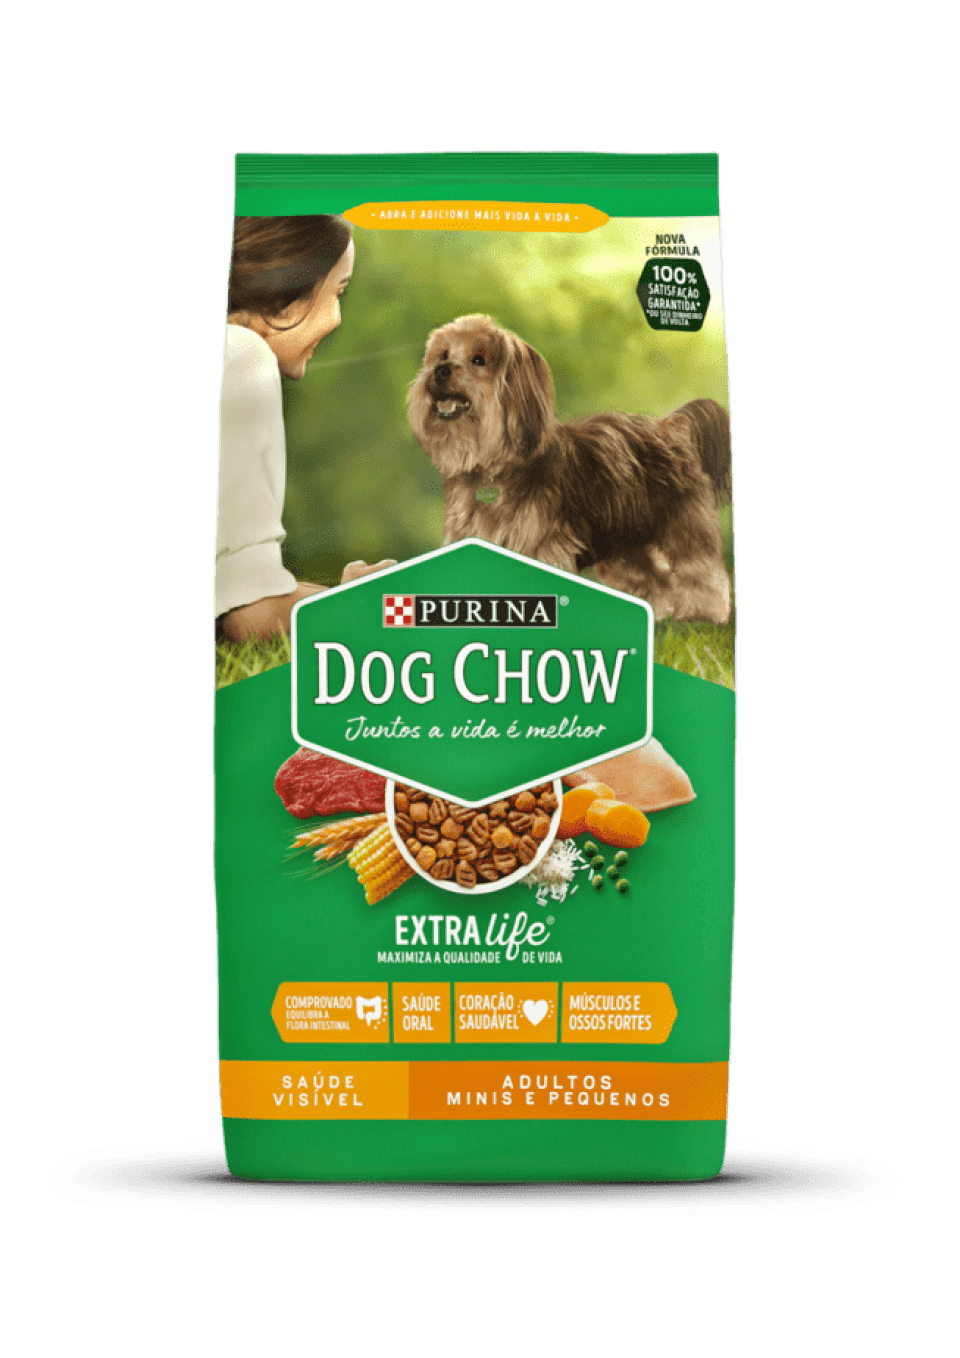 A Dog Chow jó kutyaeledel? Ismerje meg a fő összetevőit